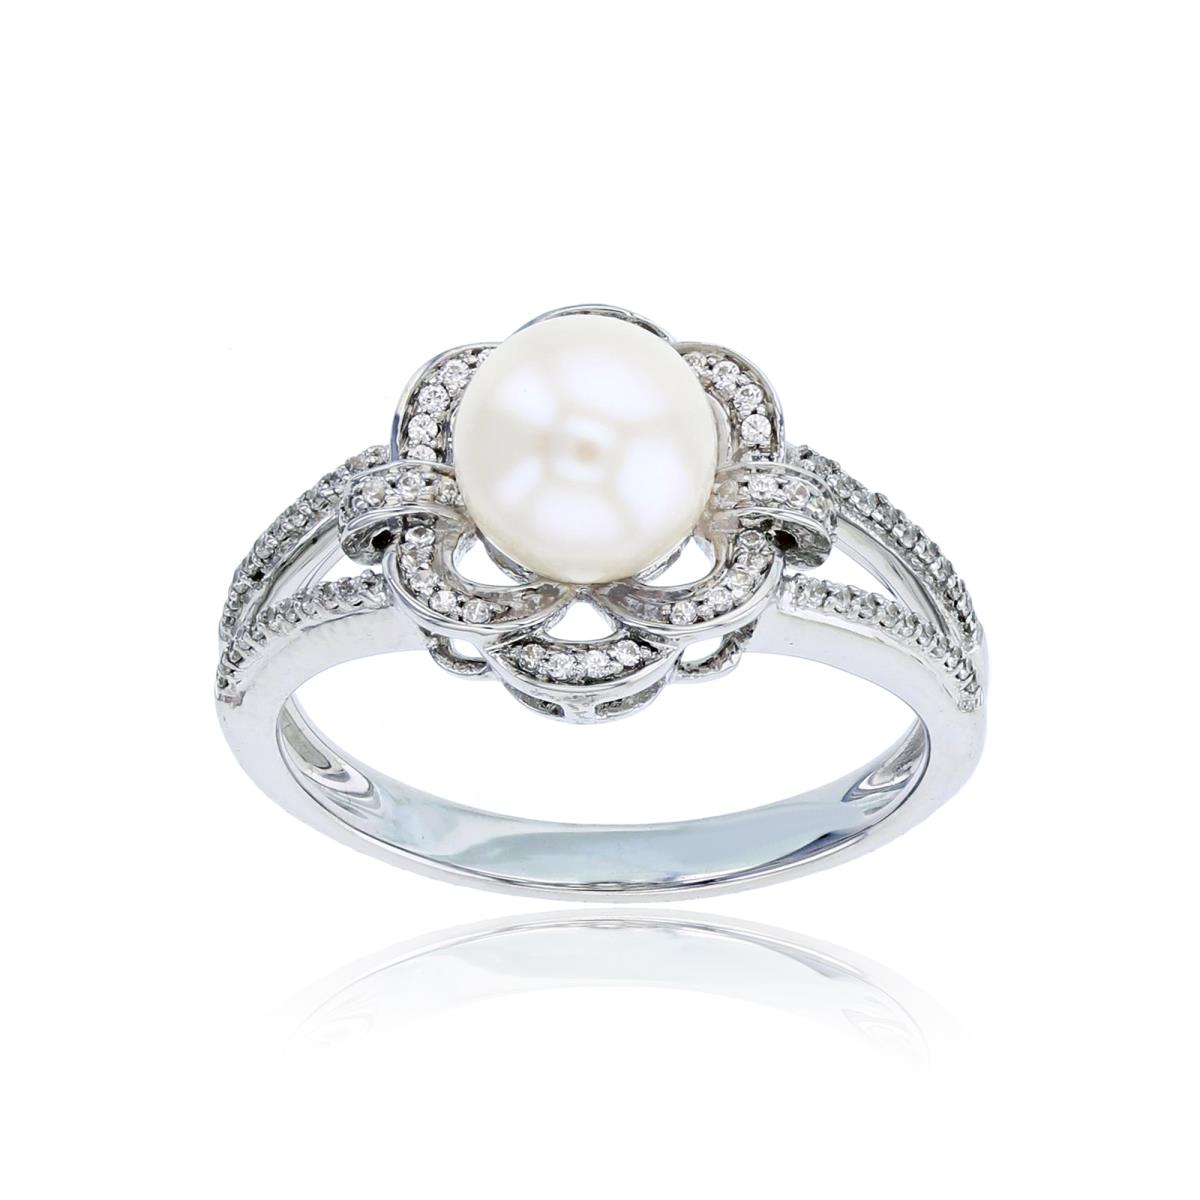 14K White Gold 0.16 CTTW Rnd Diamonds & 7mm Rnd Pearl Flower Ring